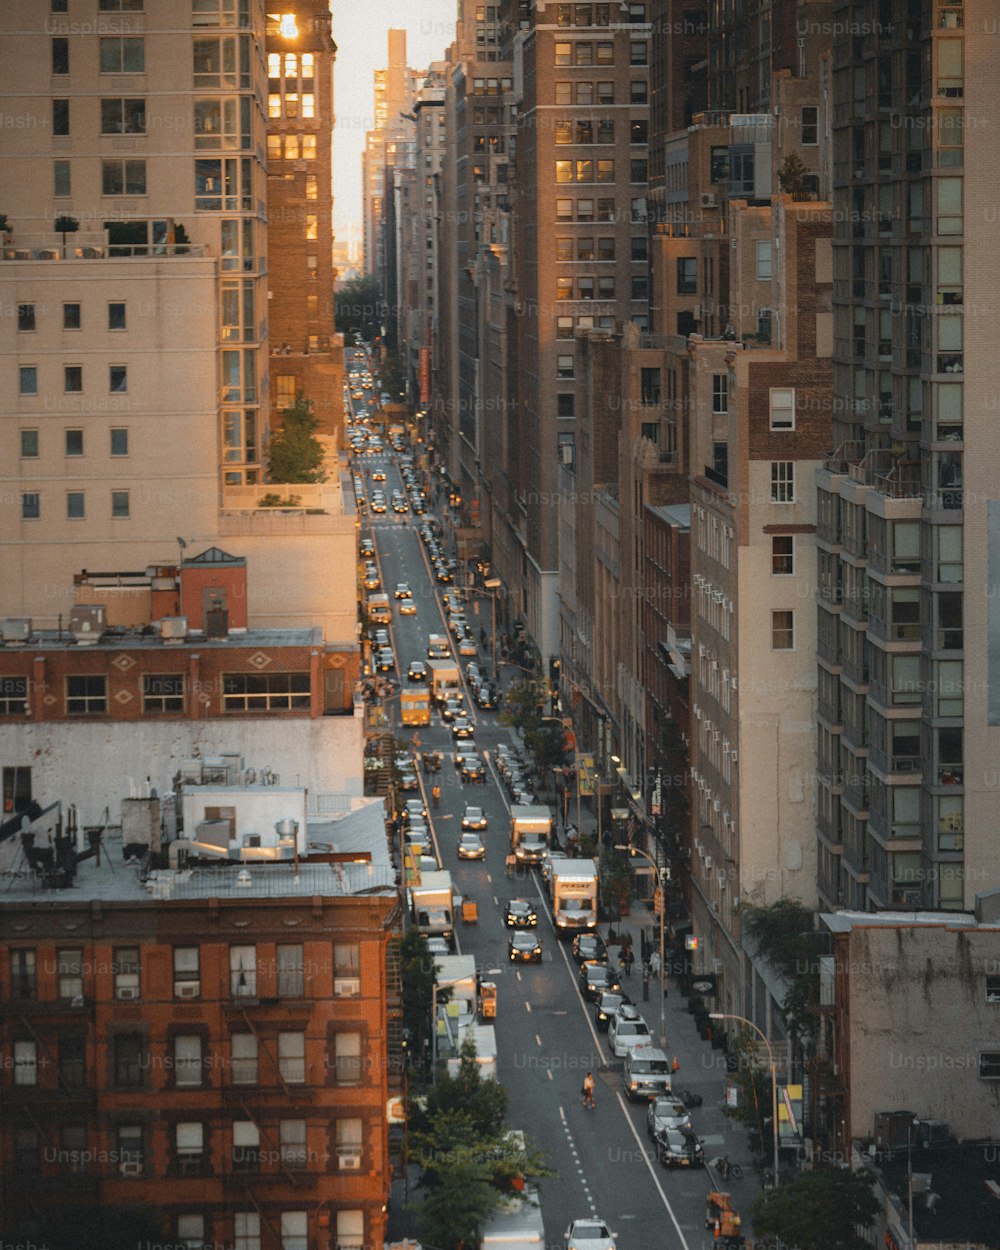 Una calle de la ciudad llena de muchos edificios altos